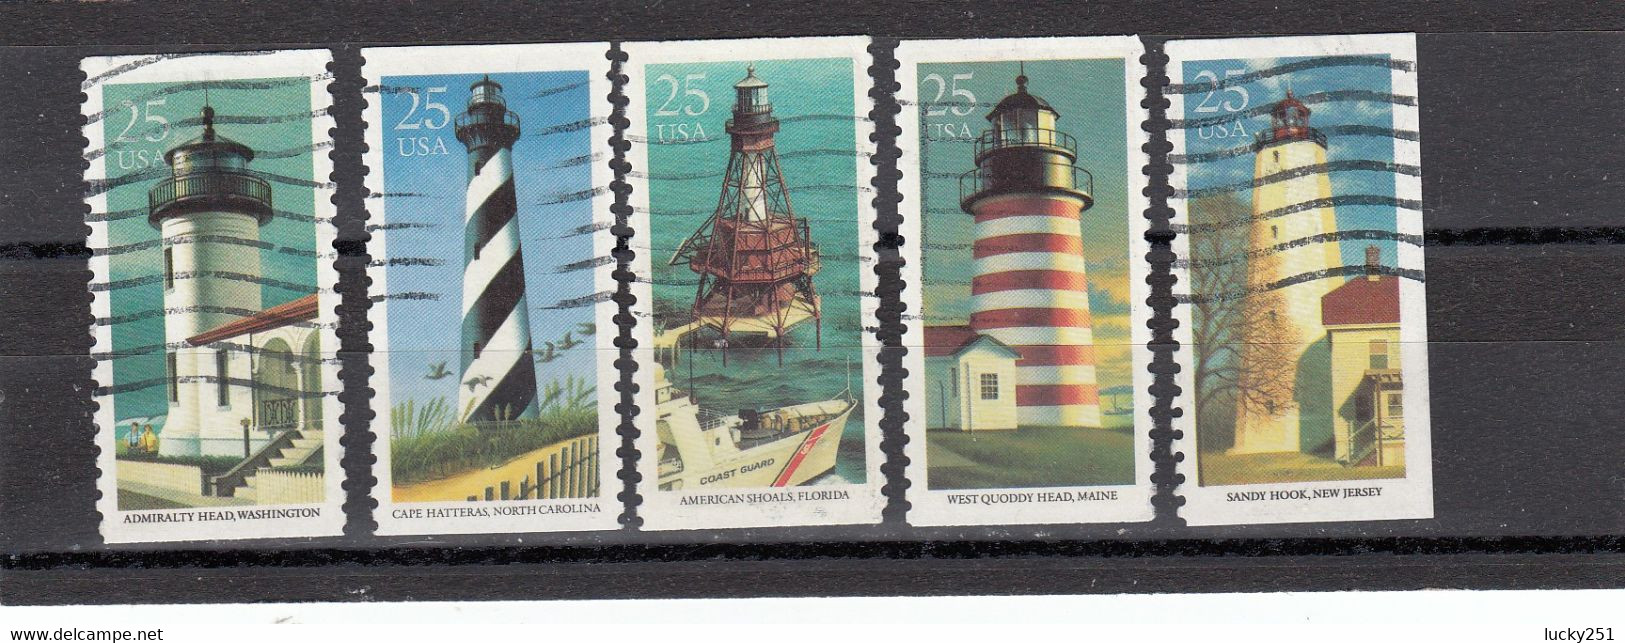 USA - Oblitéré - Phares, Lighthouse, Leuchtturm. - Lighthouses